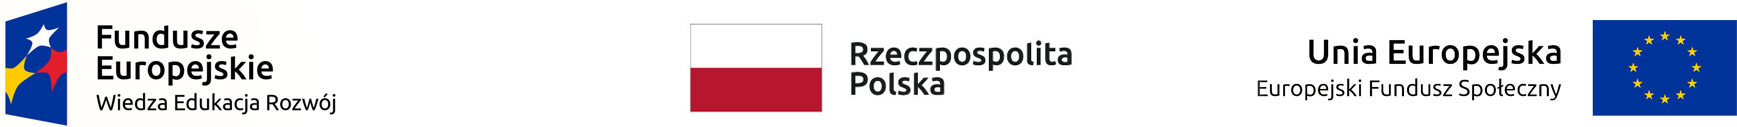 Logotypy UE i Polski